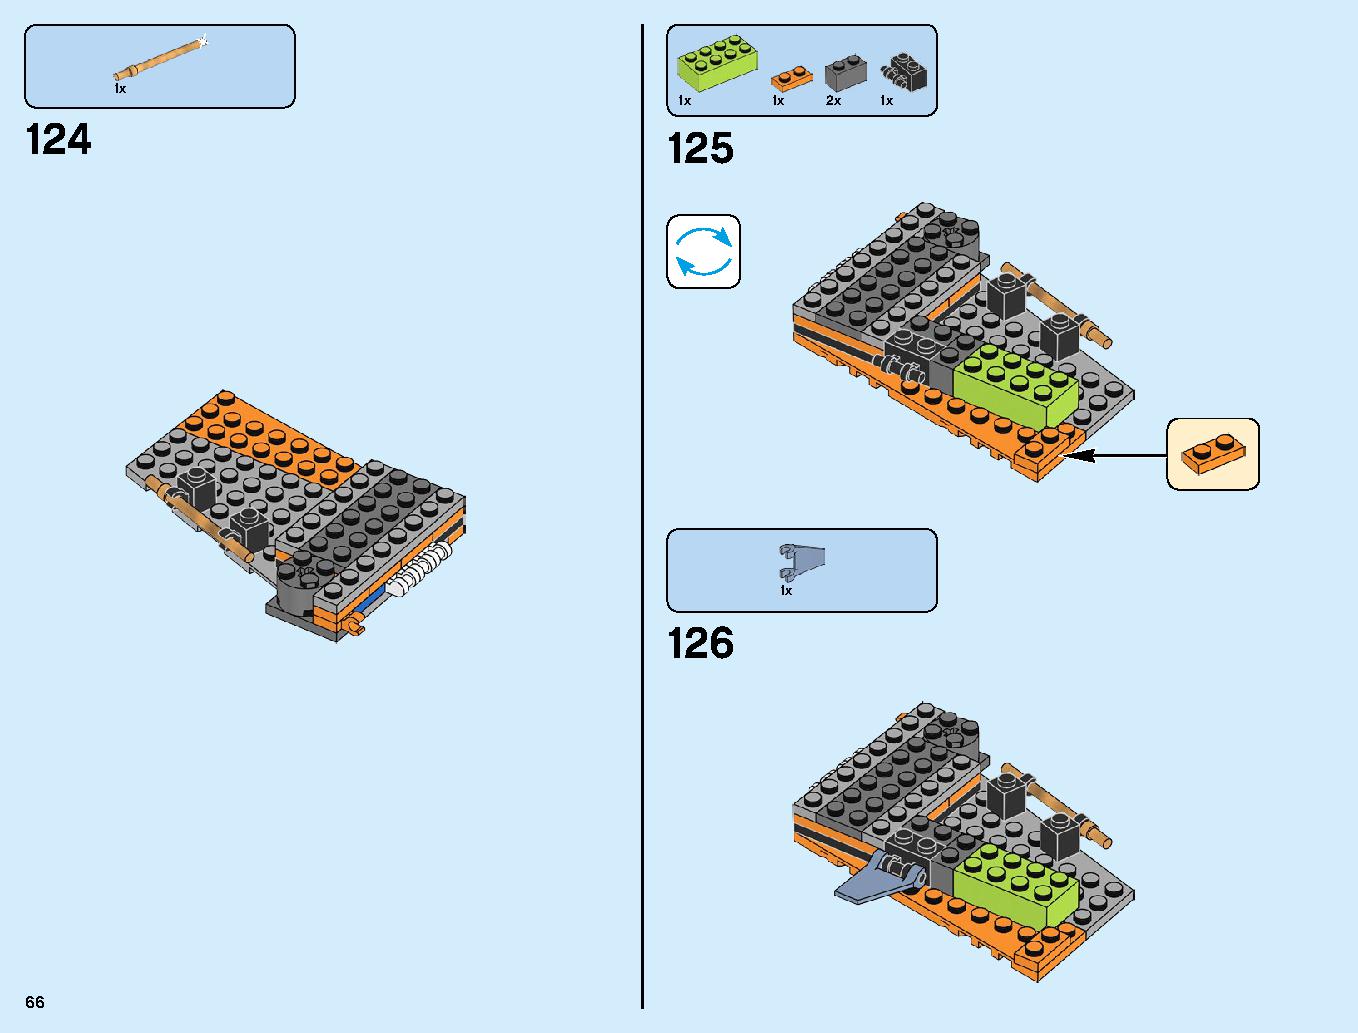 サノス アルティメット・バトル 76107 レゴの商品情報 レゴの説明書・組立方法 66 page